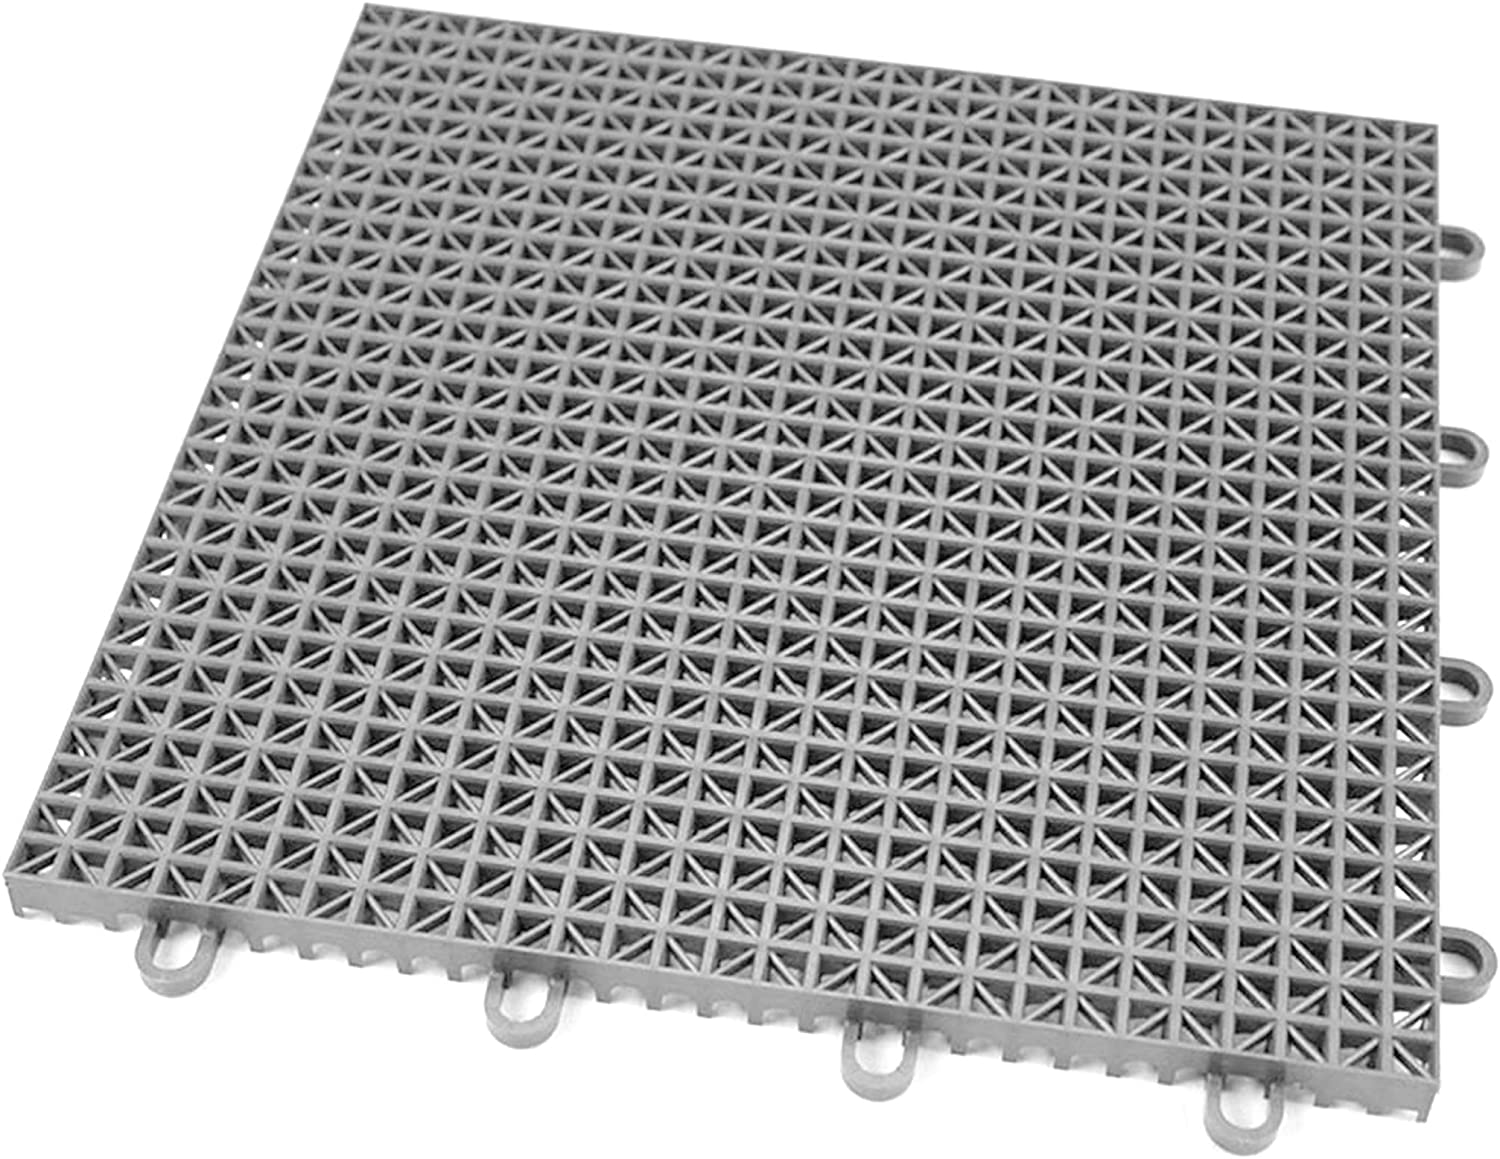 IncStores Anti-Slip UV Protected Patio Flooring Tiles